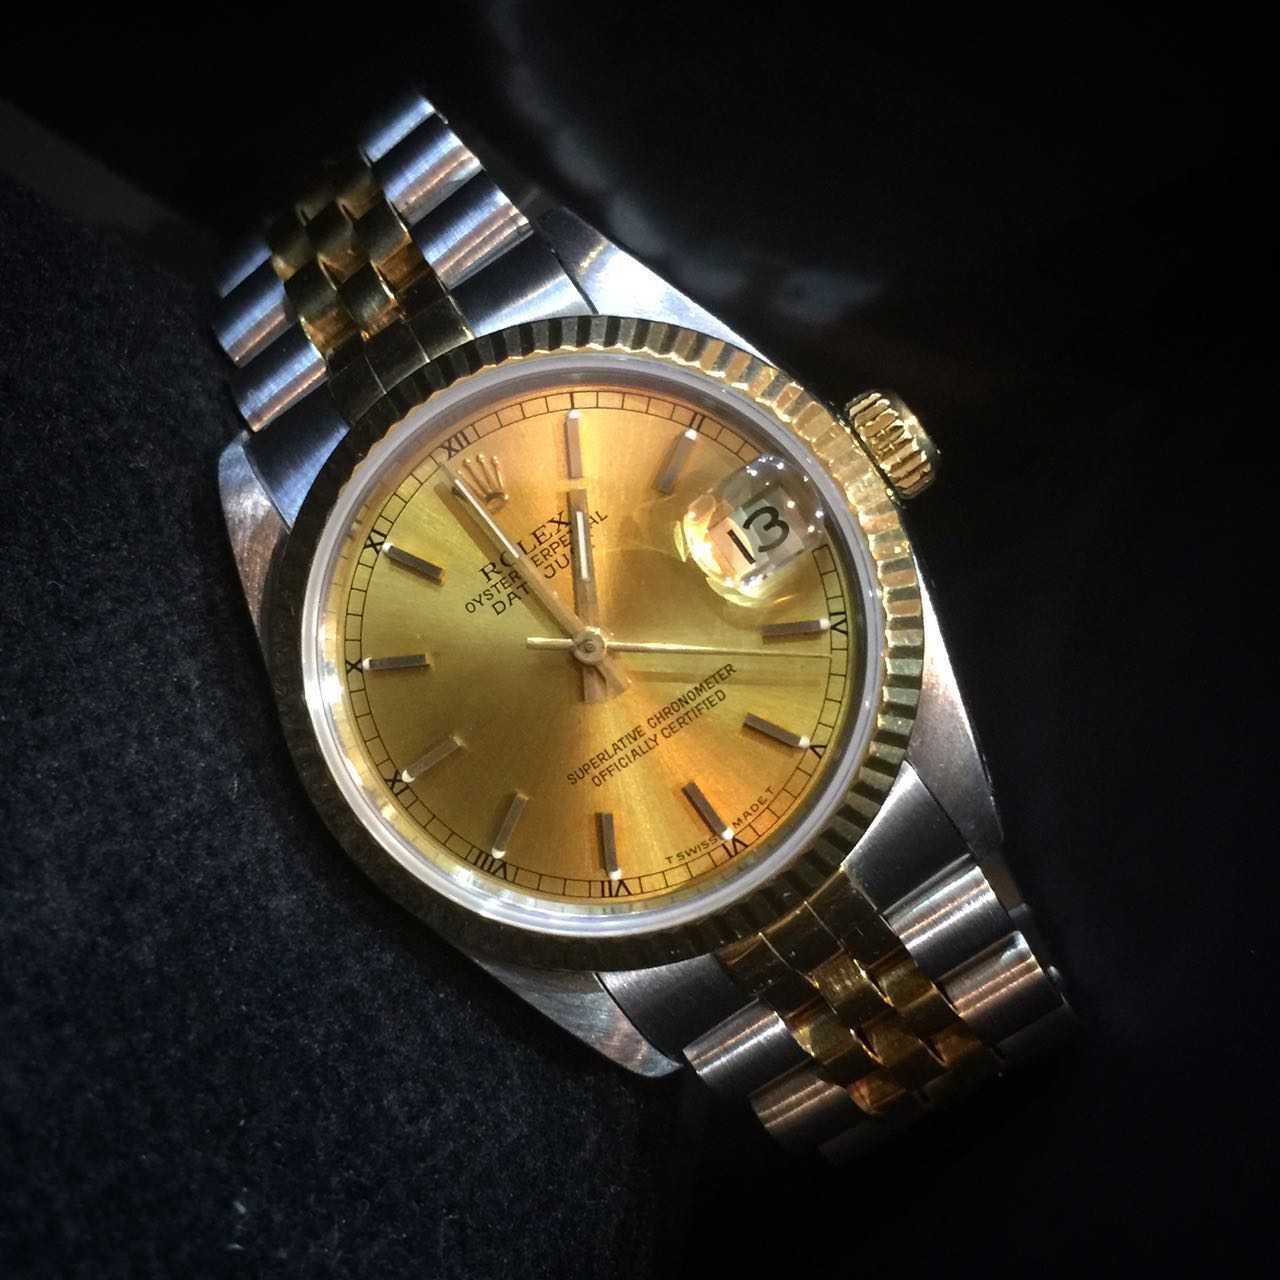 jual jam tangan rolex second original